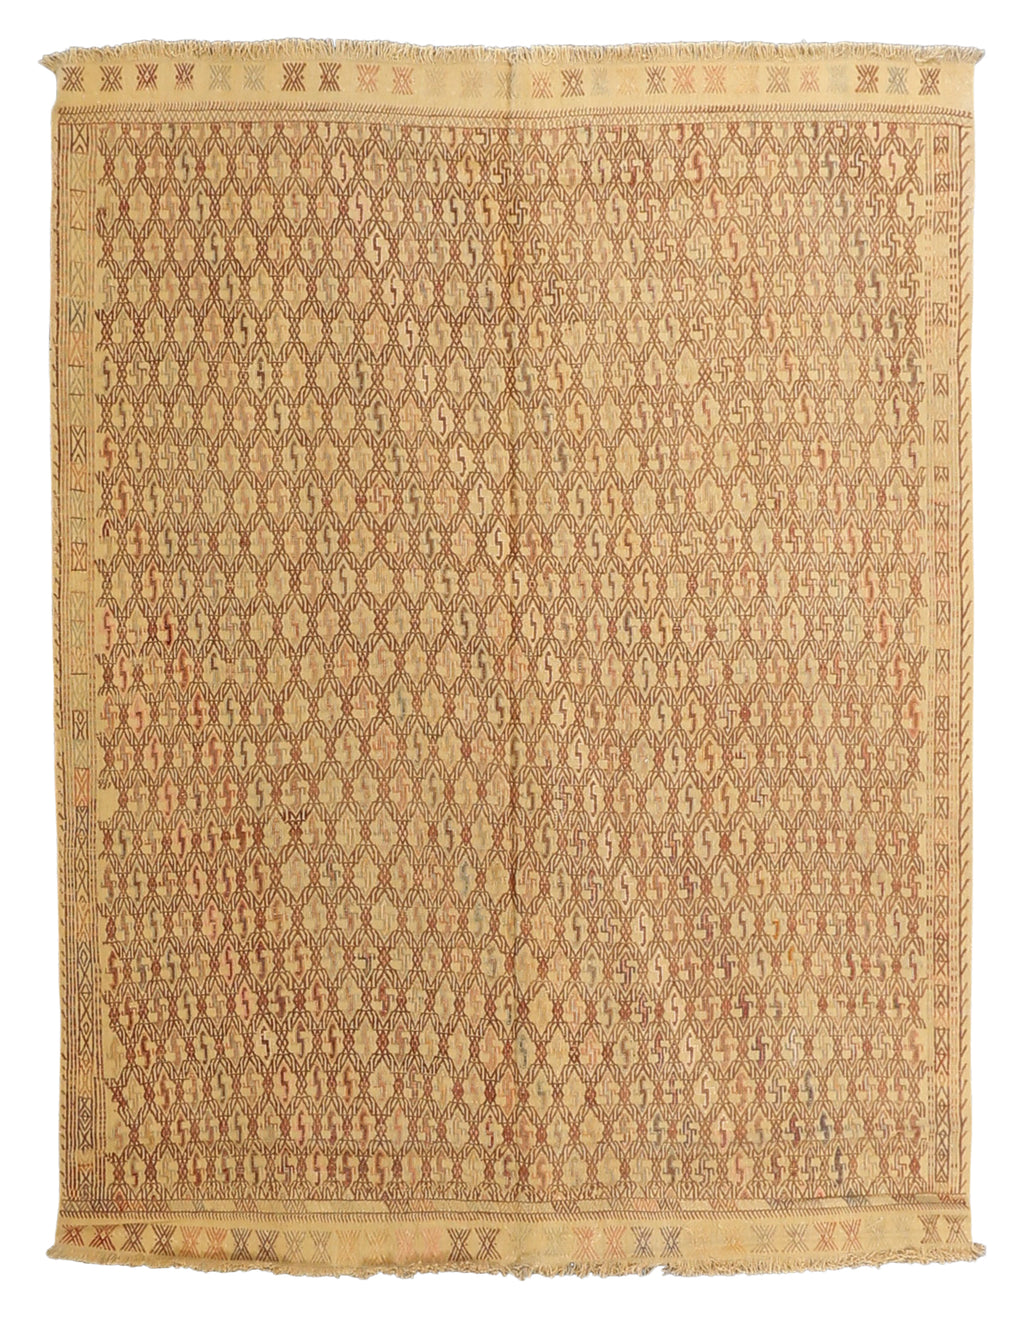 Vintage Kilim Wool Rug 5'5''x7'3''